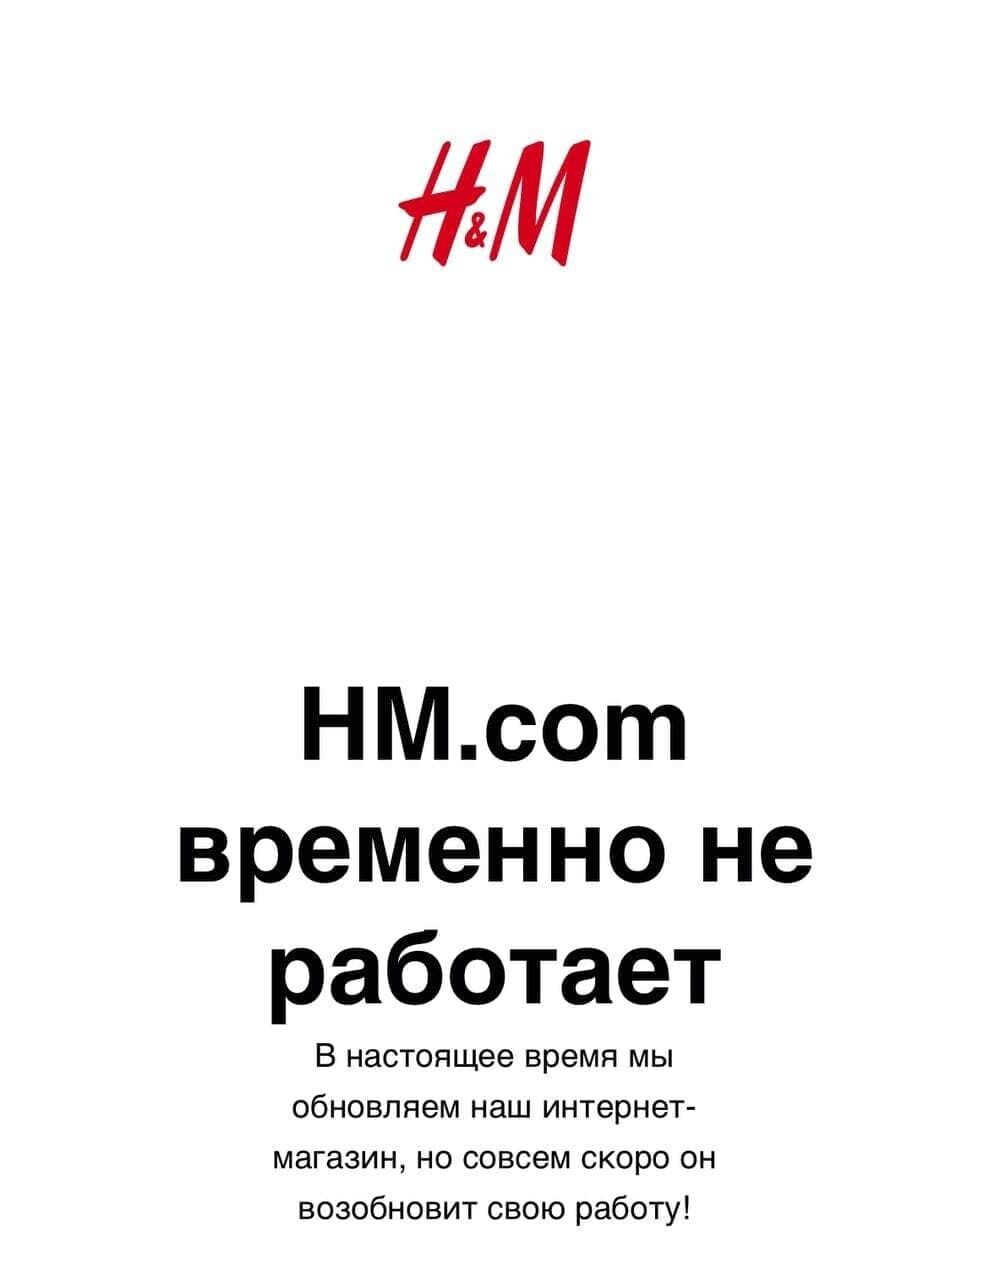 H&M приостанавливает продажу товаров в России